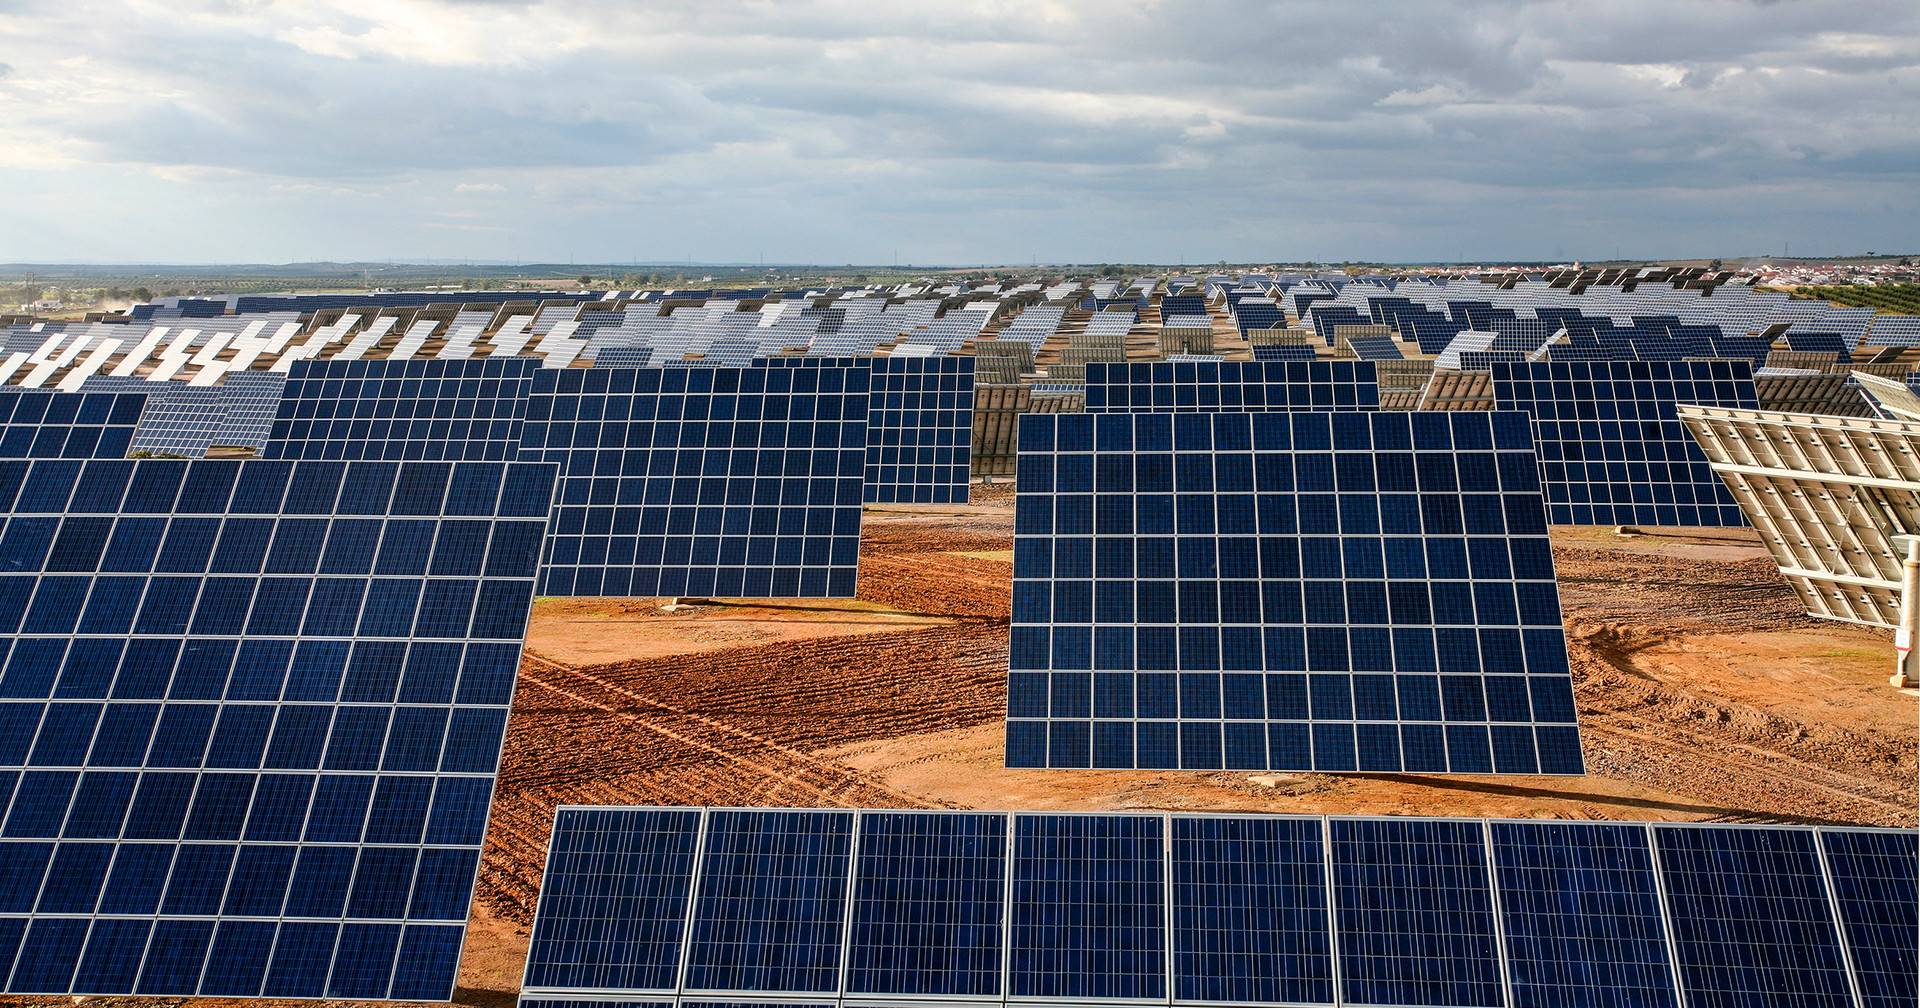 Multinacional investe 200 milhões de euros em central solar em Vila Nova de Paiva